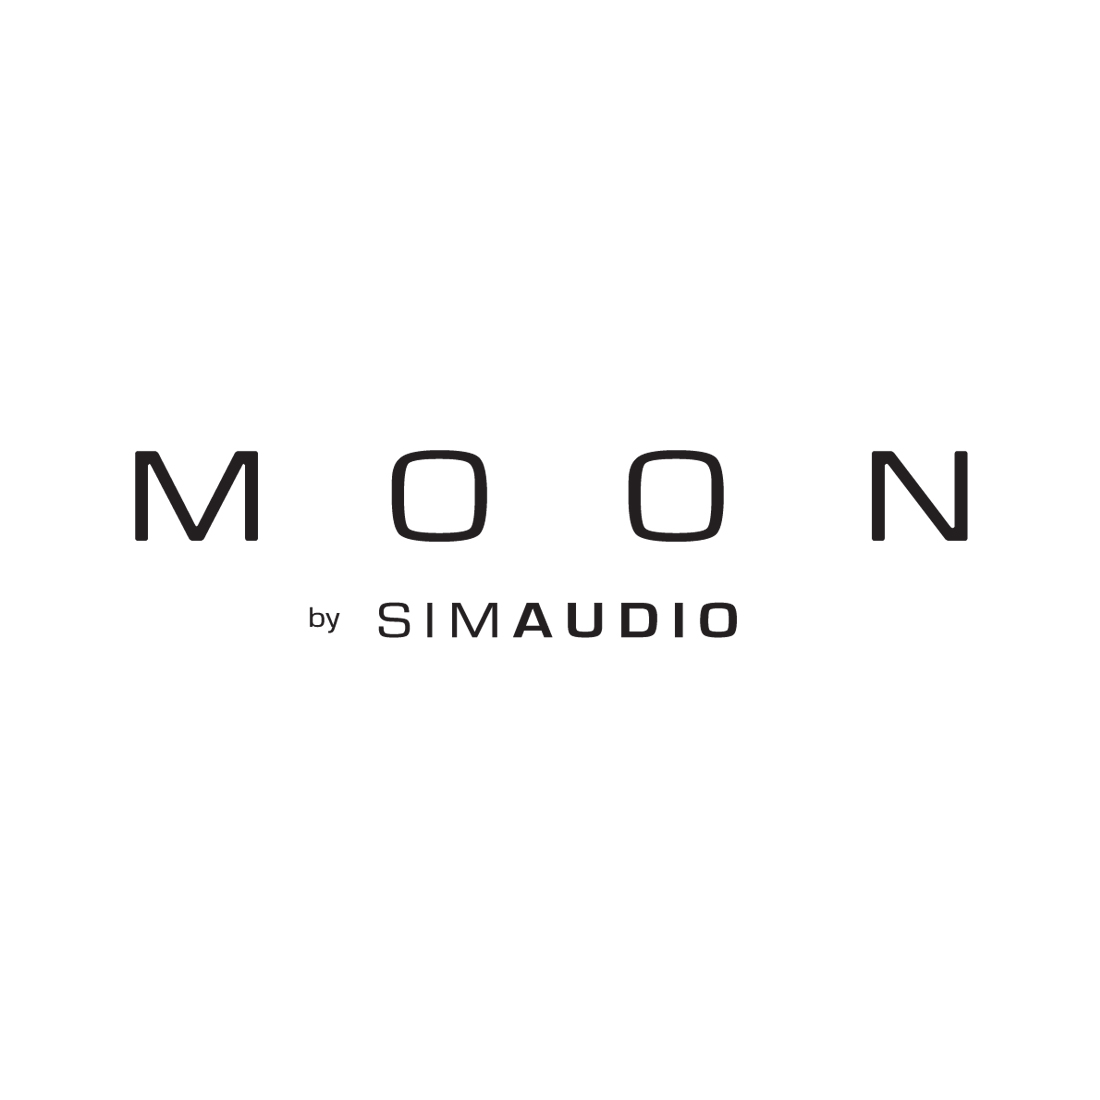 Simaudio Moon